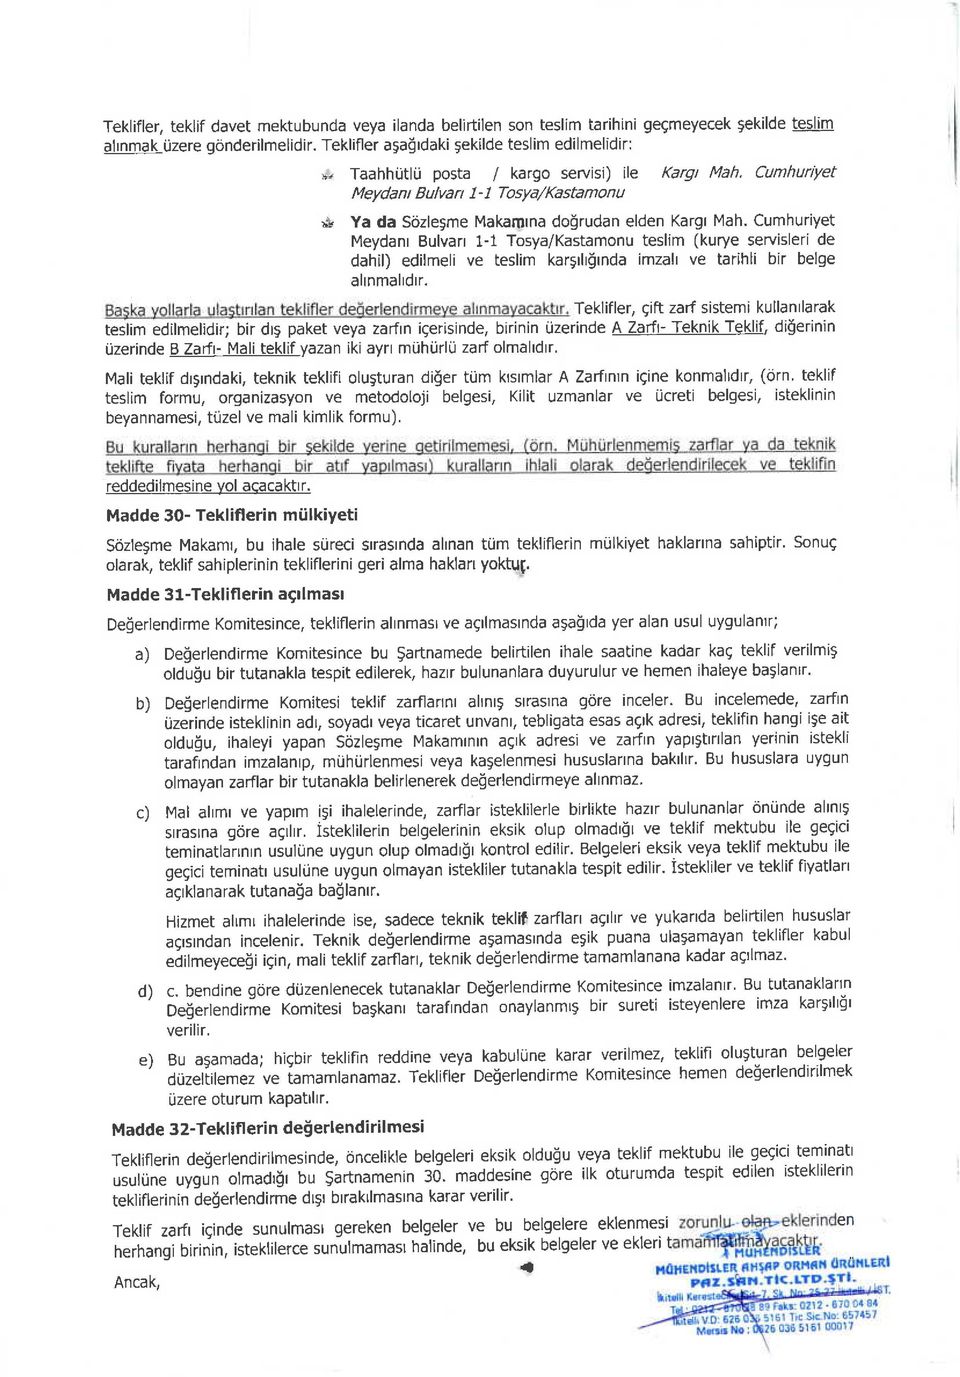 Cumhuriyet Meydanr Bulvan 1-1 Tosya/Kastamonu teslim (kurye servisleri de dahil) edilmeli ve teslim kar5rlrlrnda imzalt ve tarihli bir belge alnmaldrr.